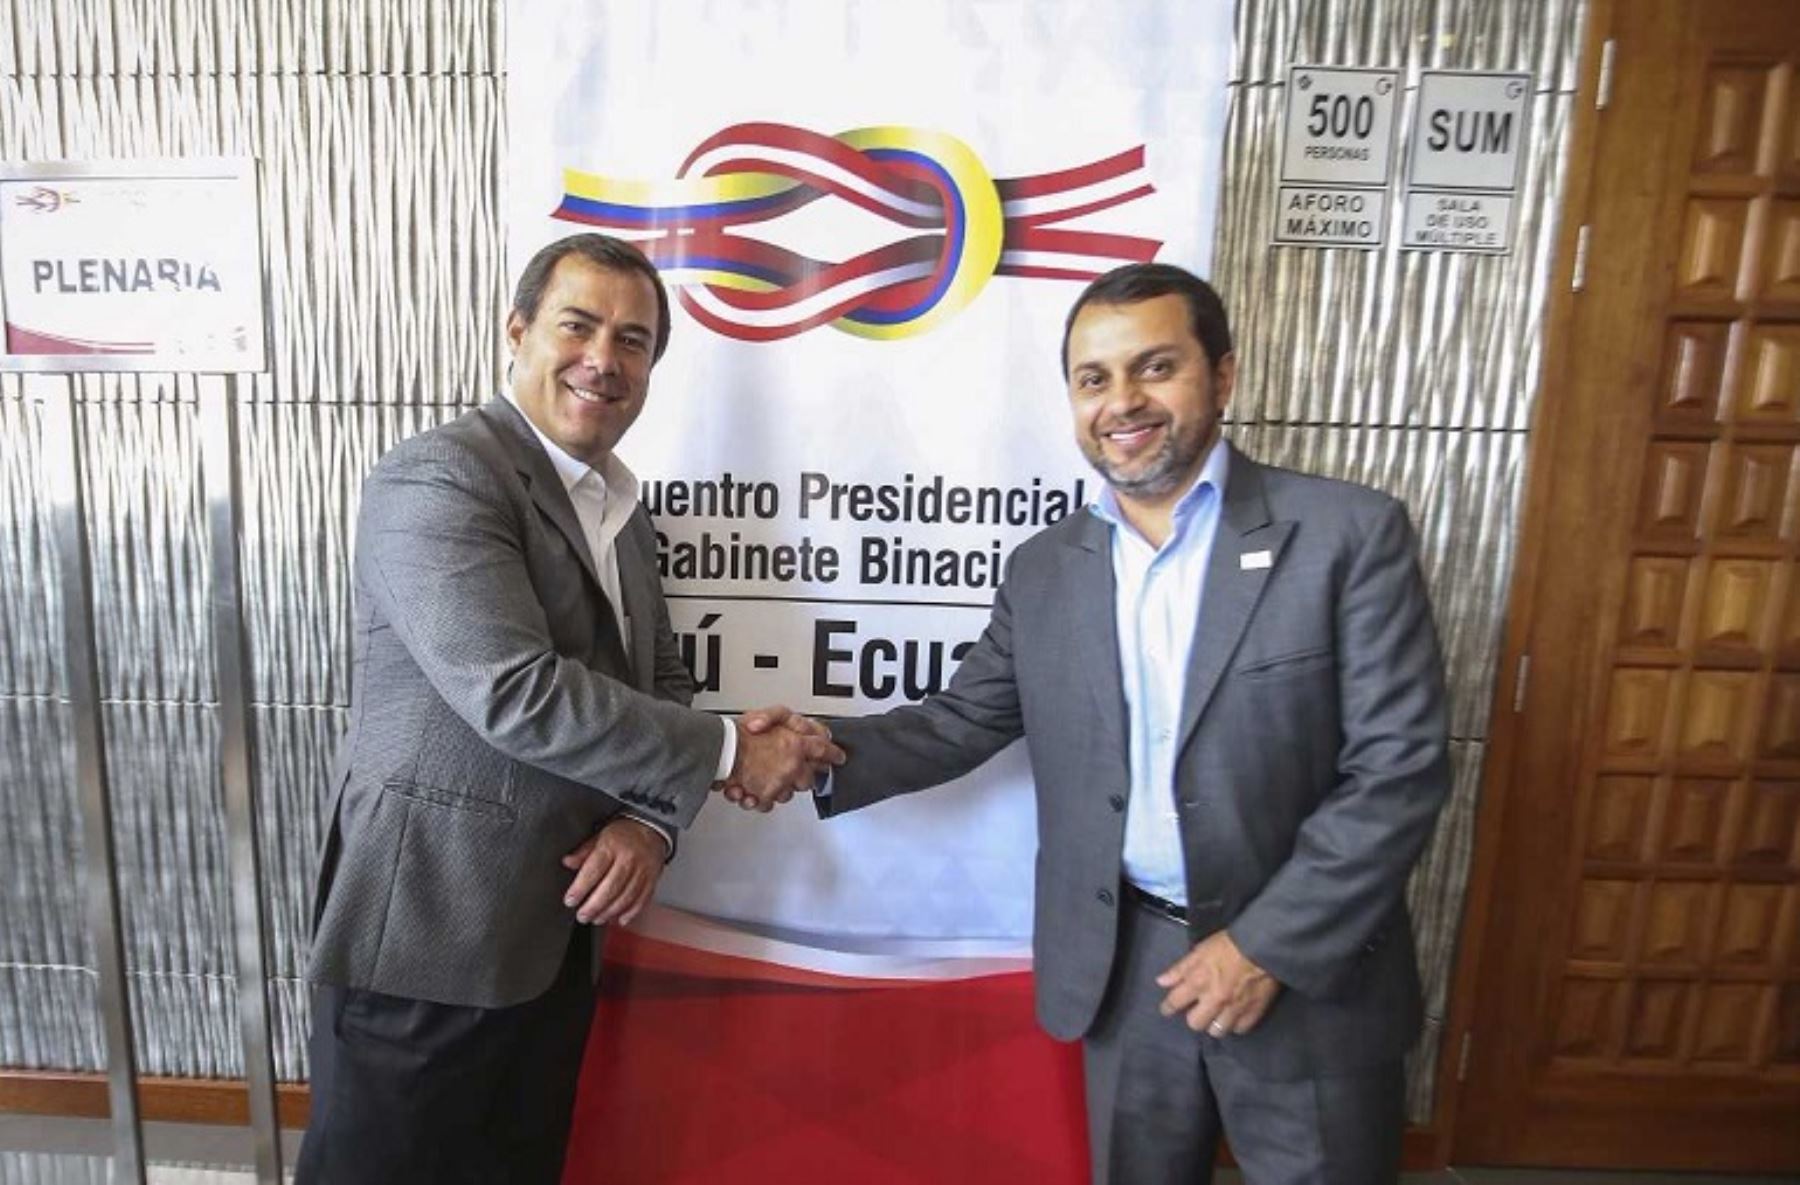 Perú y Ecuador avanzan hacia la consolidación de la integración de infraestructura vial y de telecomunicaciones binacional tras los acuerdos alcanzados durante el Encuentro Presidencial y XI Gabinete Binacional celebrado ayer en la ciudad de Trujillo, en La Libertad.